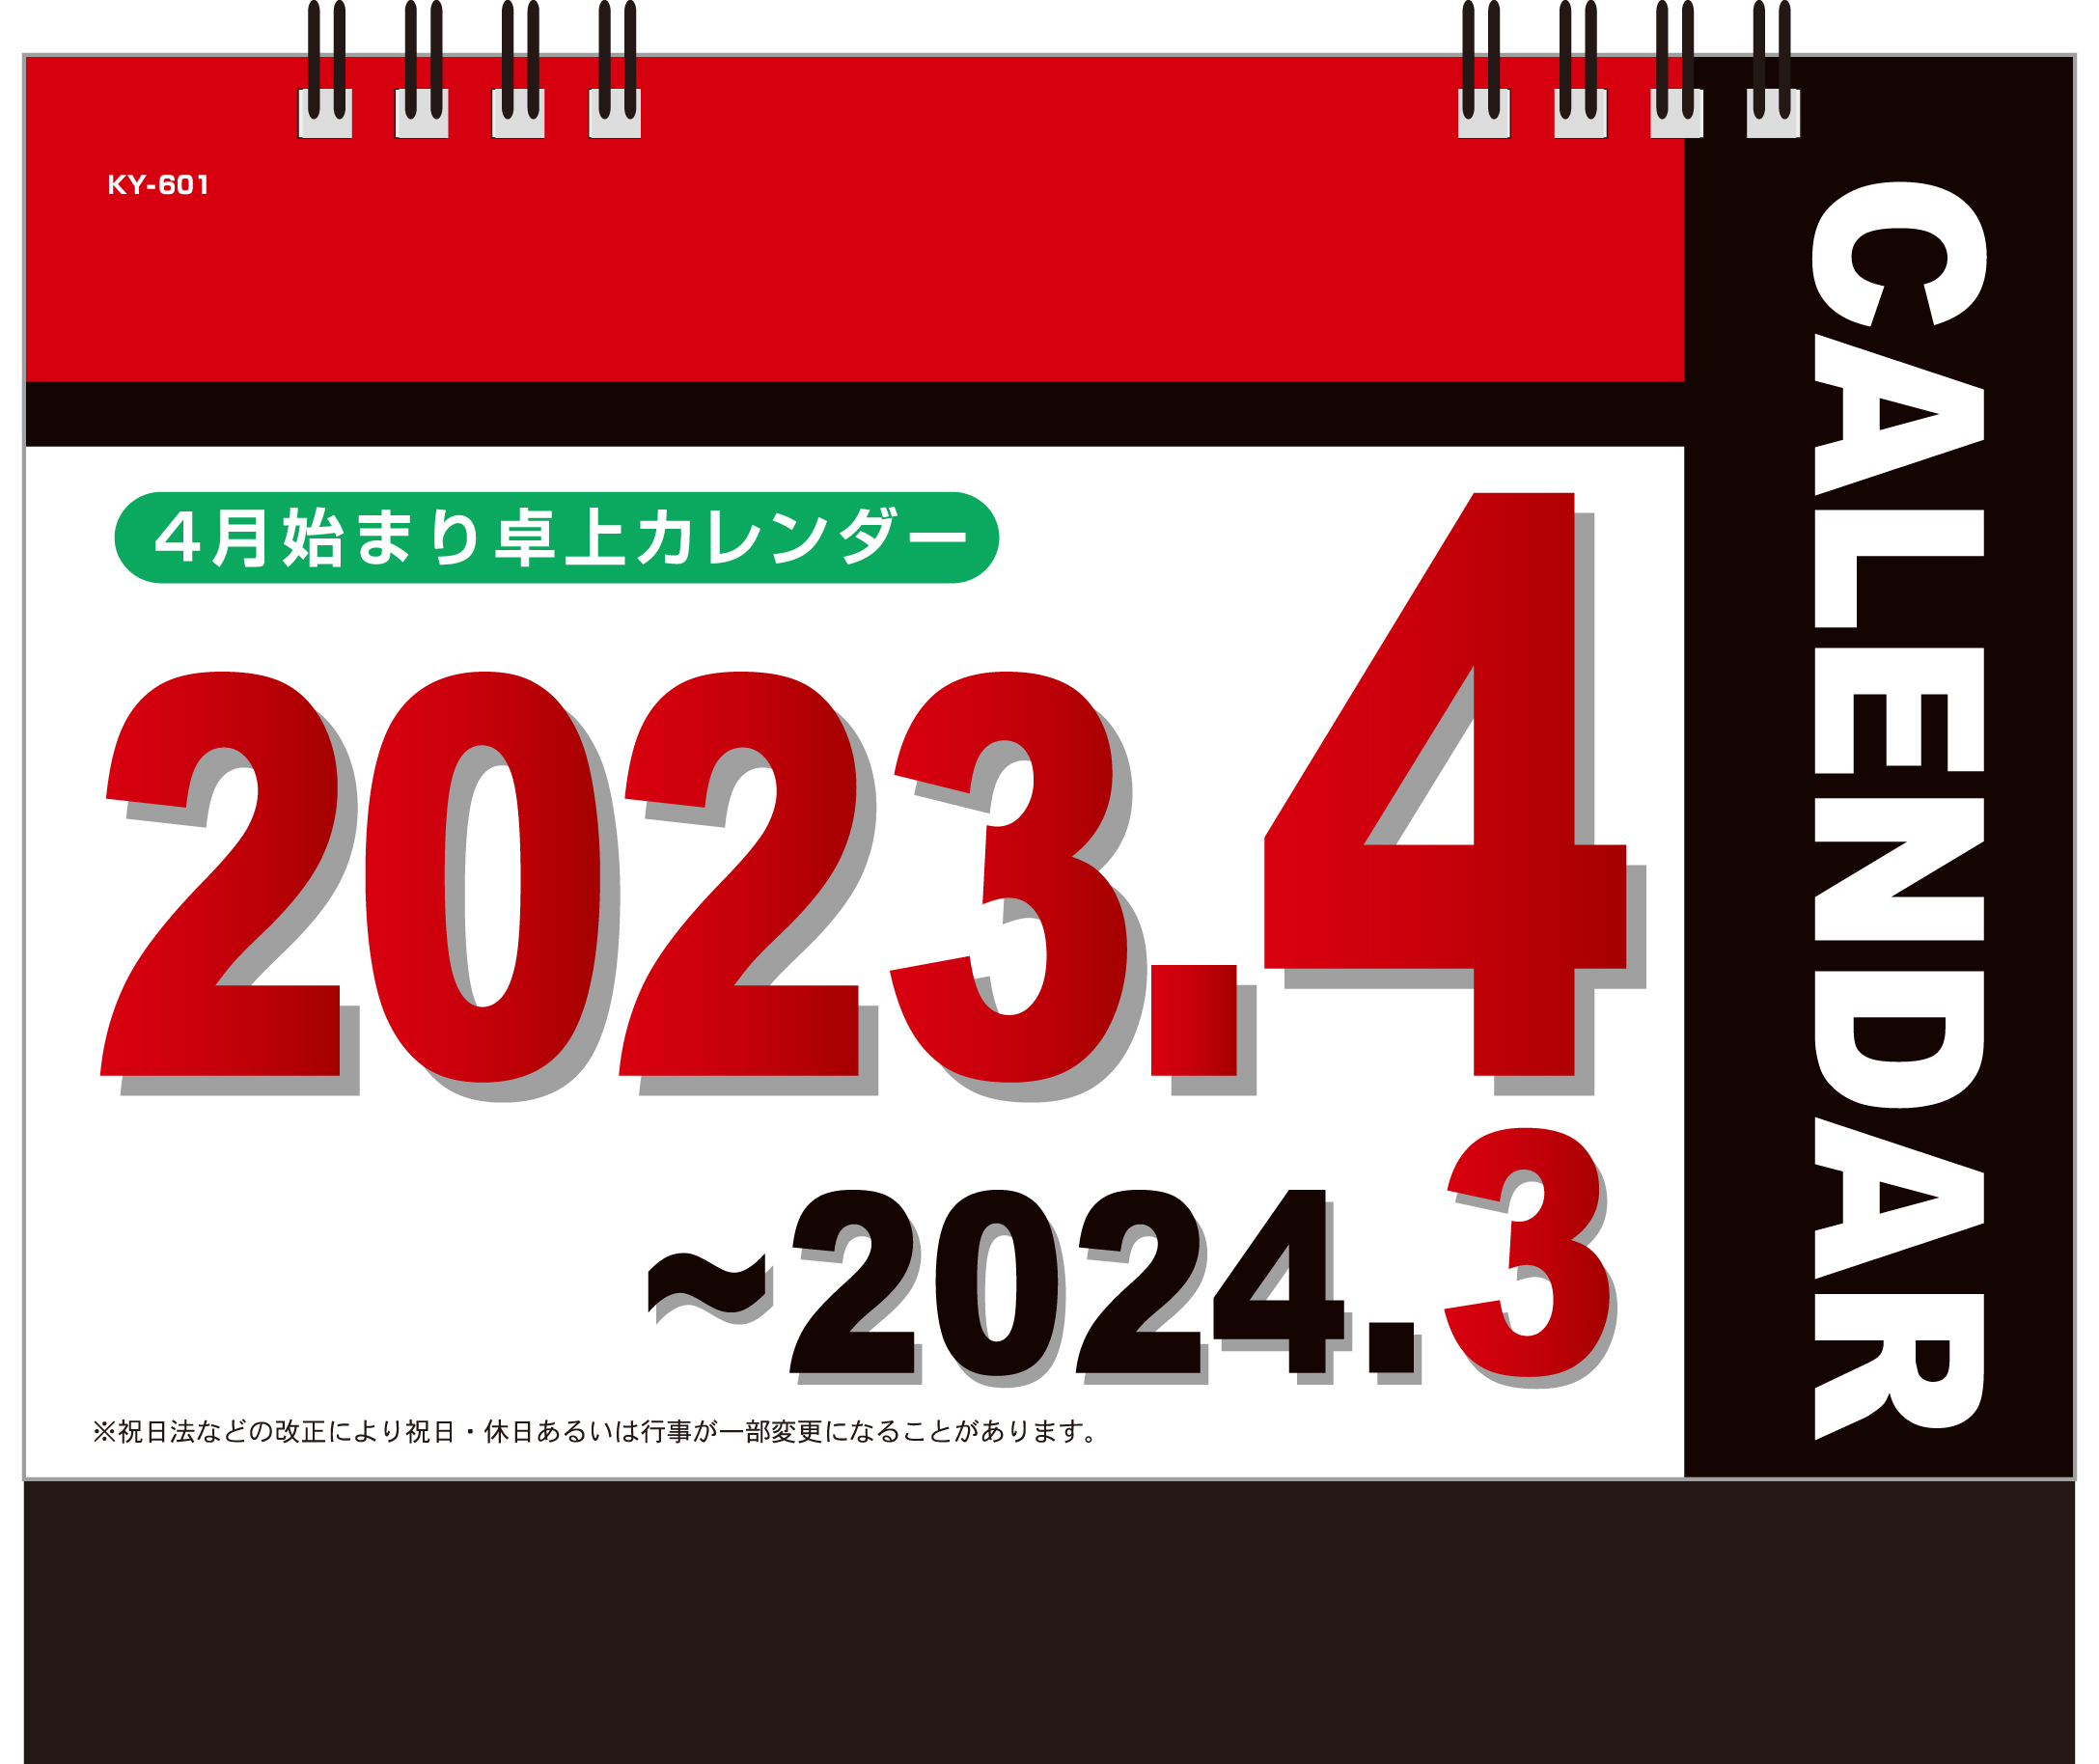 2023年 4月始まり卓上カレンダー KY-601